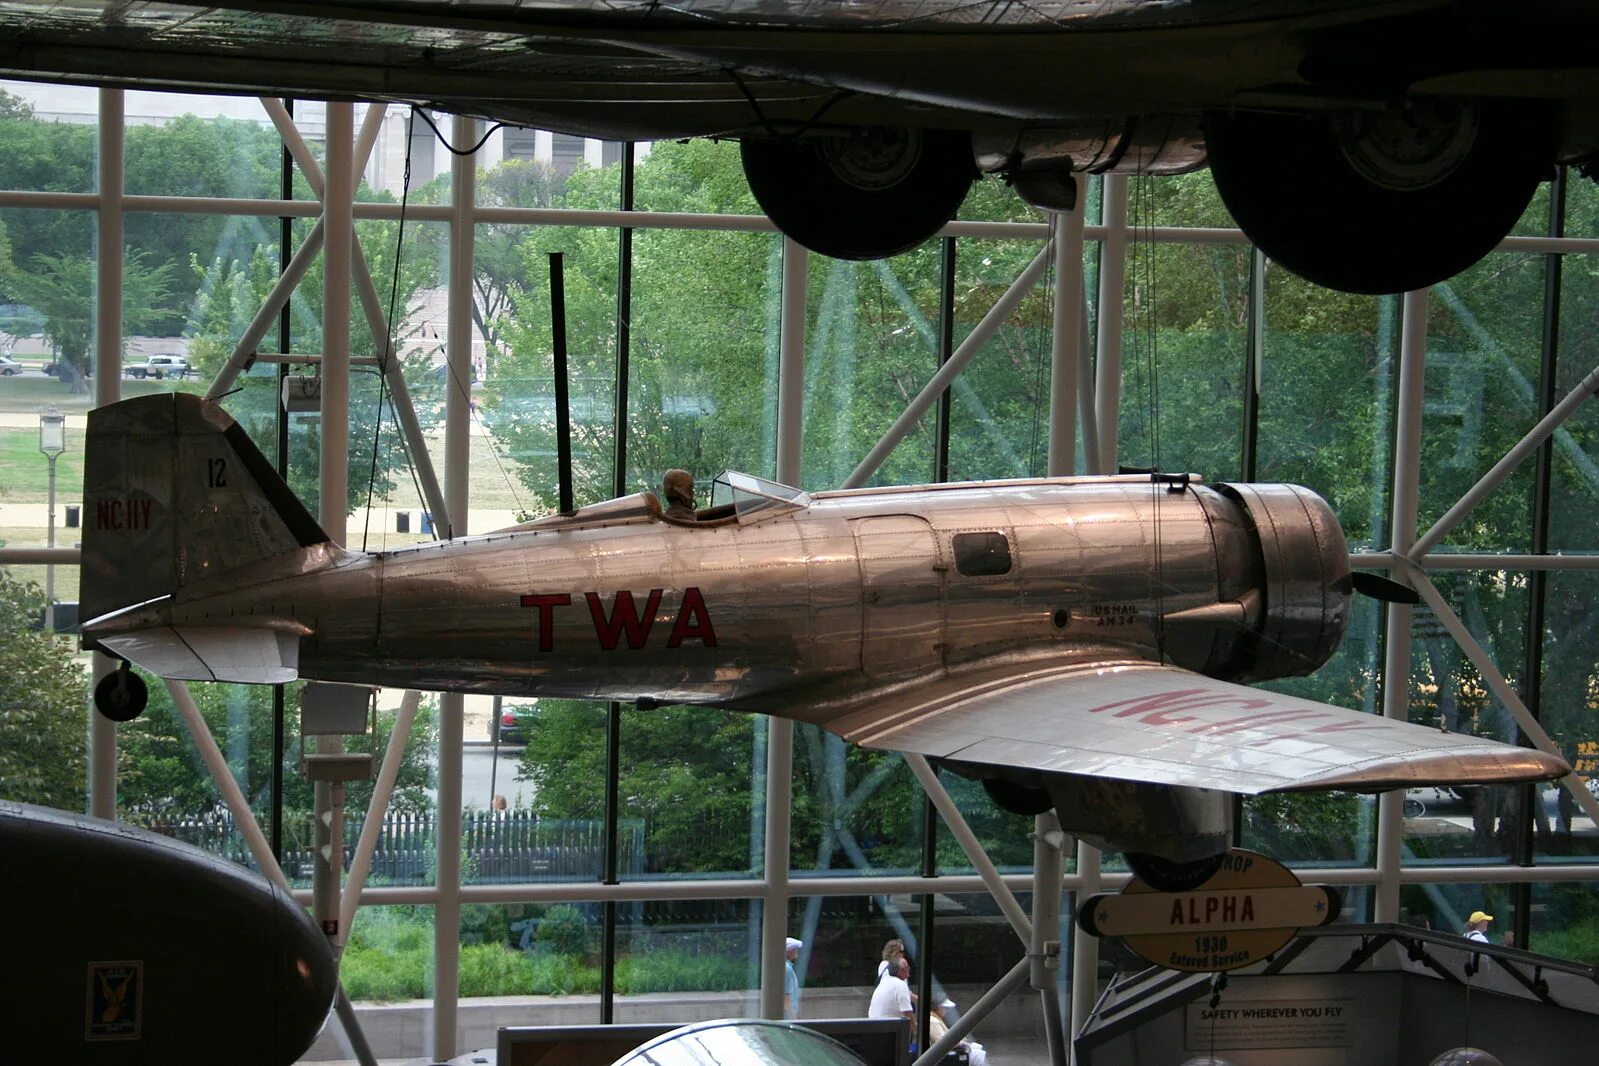 Alpha wiki. Northrop c-19 Alpha. Нортроп Альфа. Национальный музей авиации США, Огайо. Музей ВВС США В Огайо.